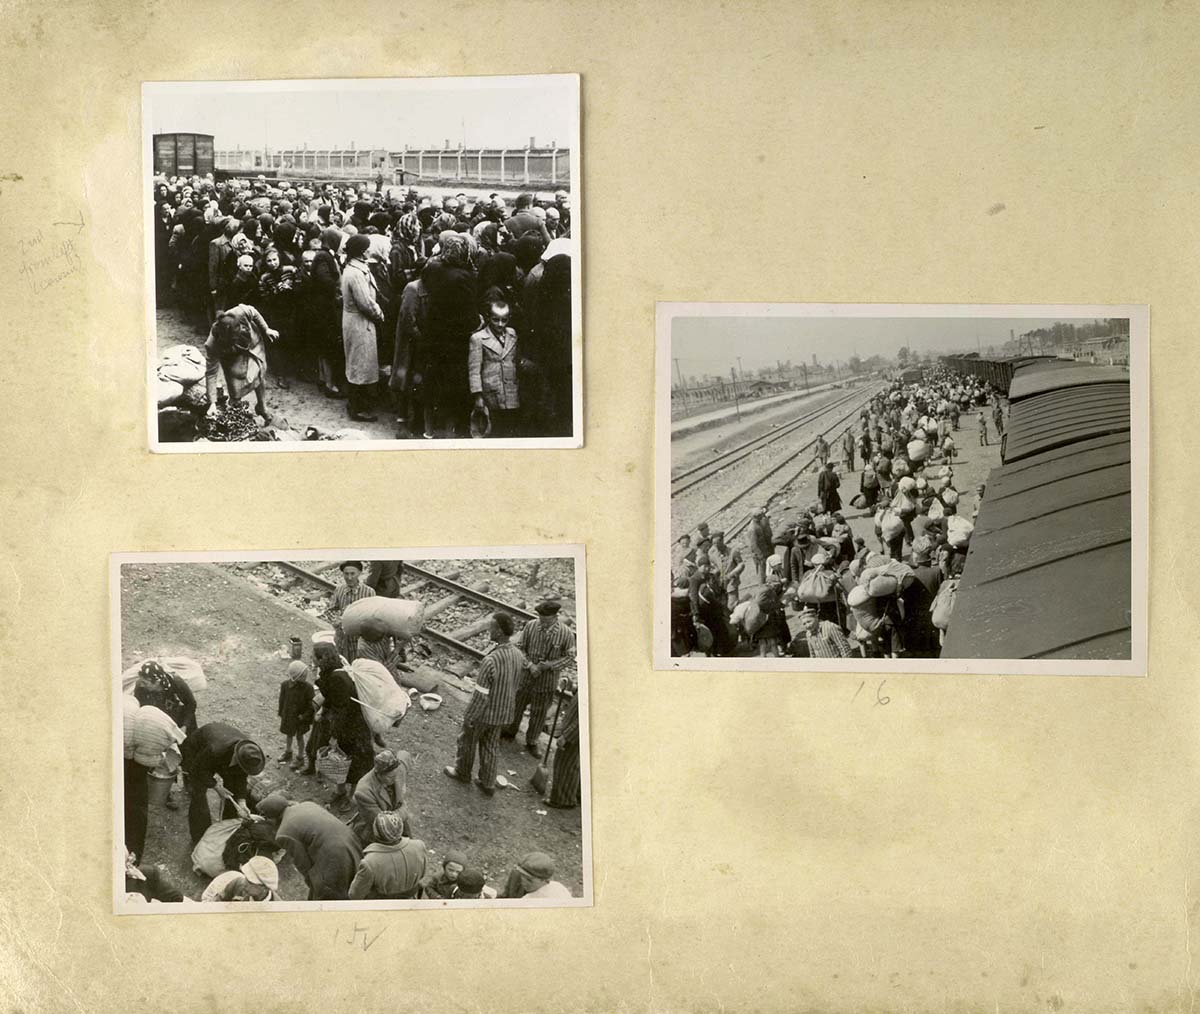 Juden bei der Ankunft im Lager, vor dem Selektionsprozess. Massenszenen wie diese waren ein fast alltäglicher Vorgang im Sommer 1944, als die Vernichtung der ungarischen Juden auf ihrem Höhepunkt stand